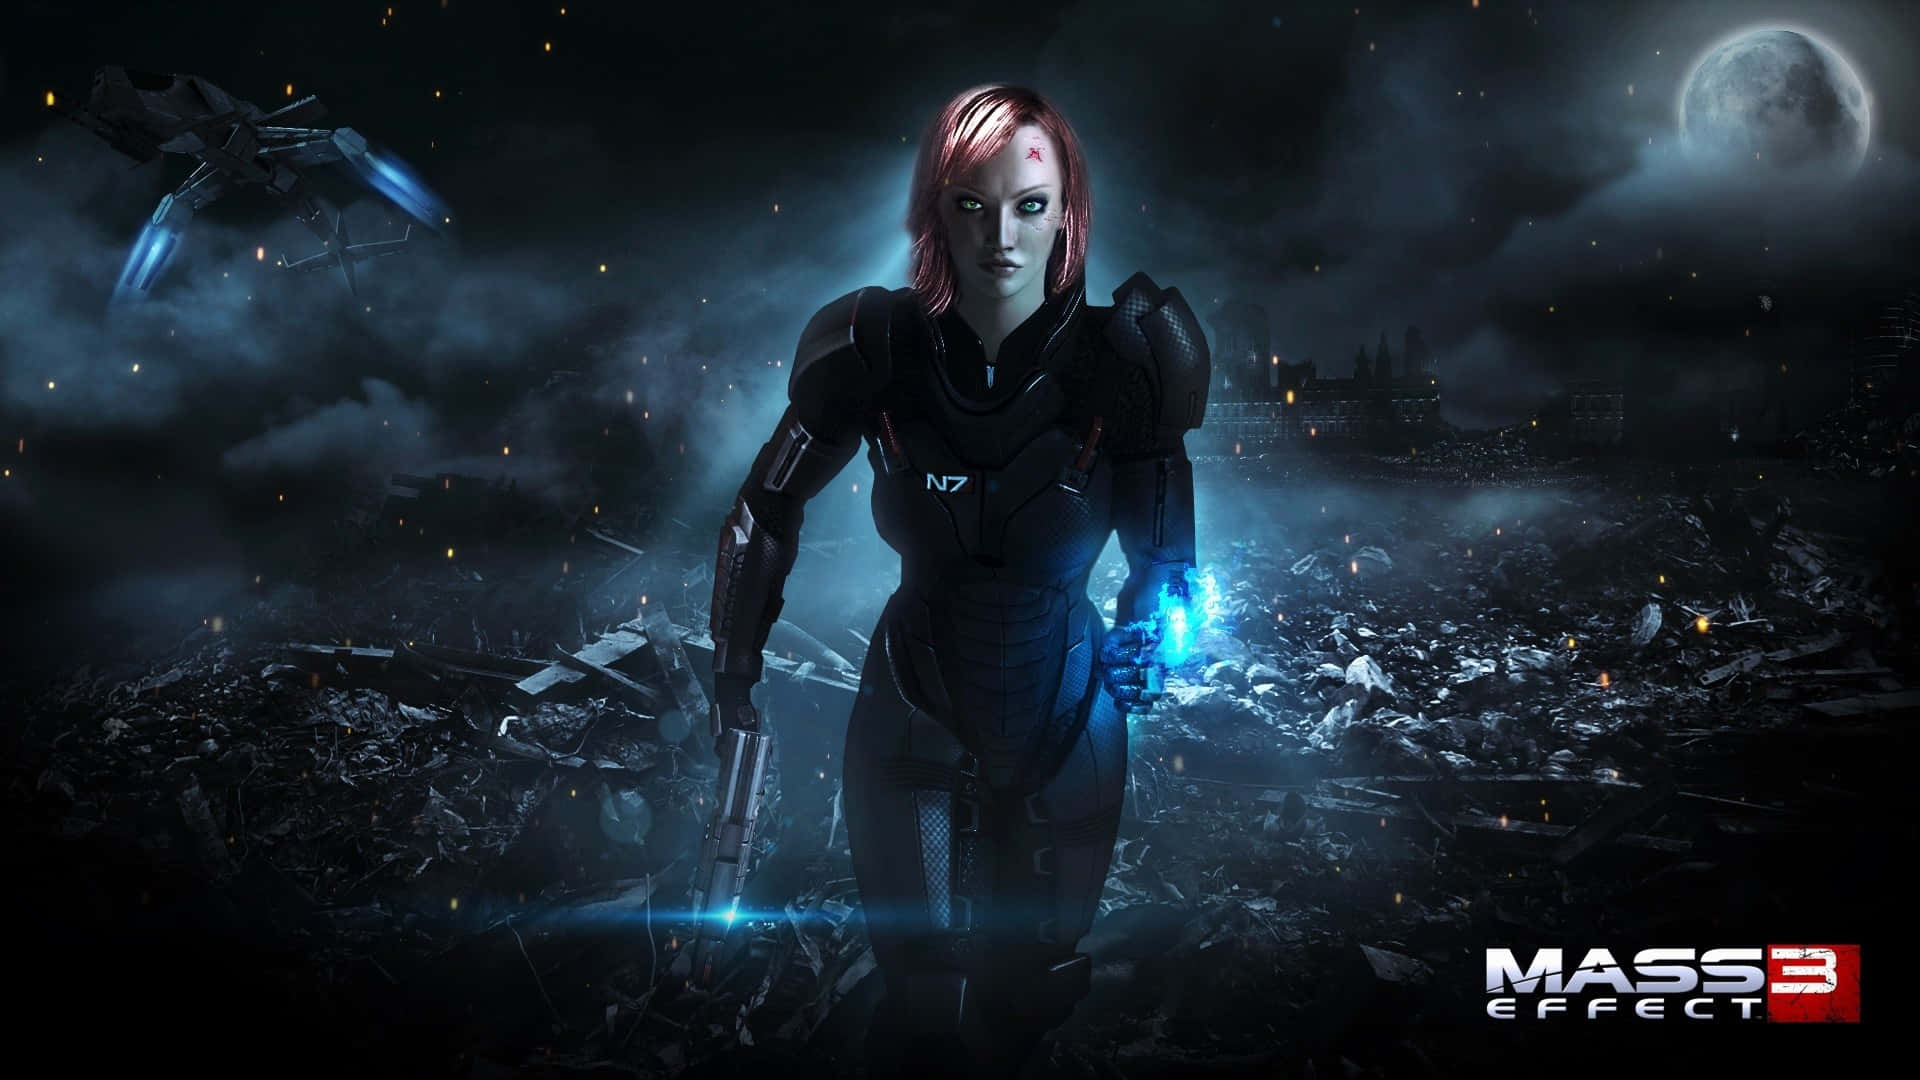 Losmiembros Del Escuadrón Participan En Una Intensa Batalla En El Modo Multijugador De Mass Effect. Fondo de pantalla